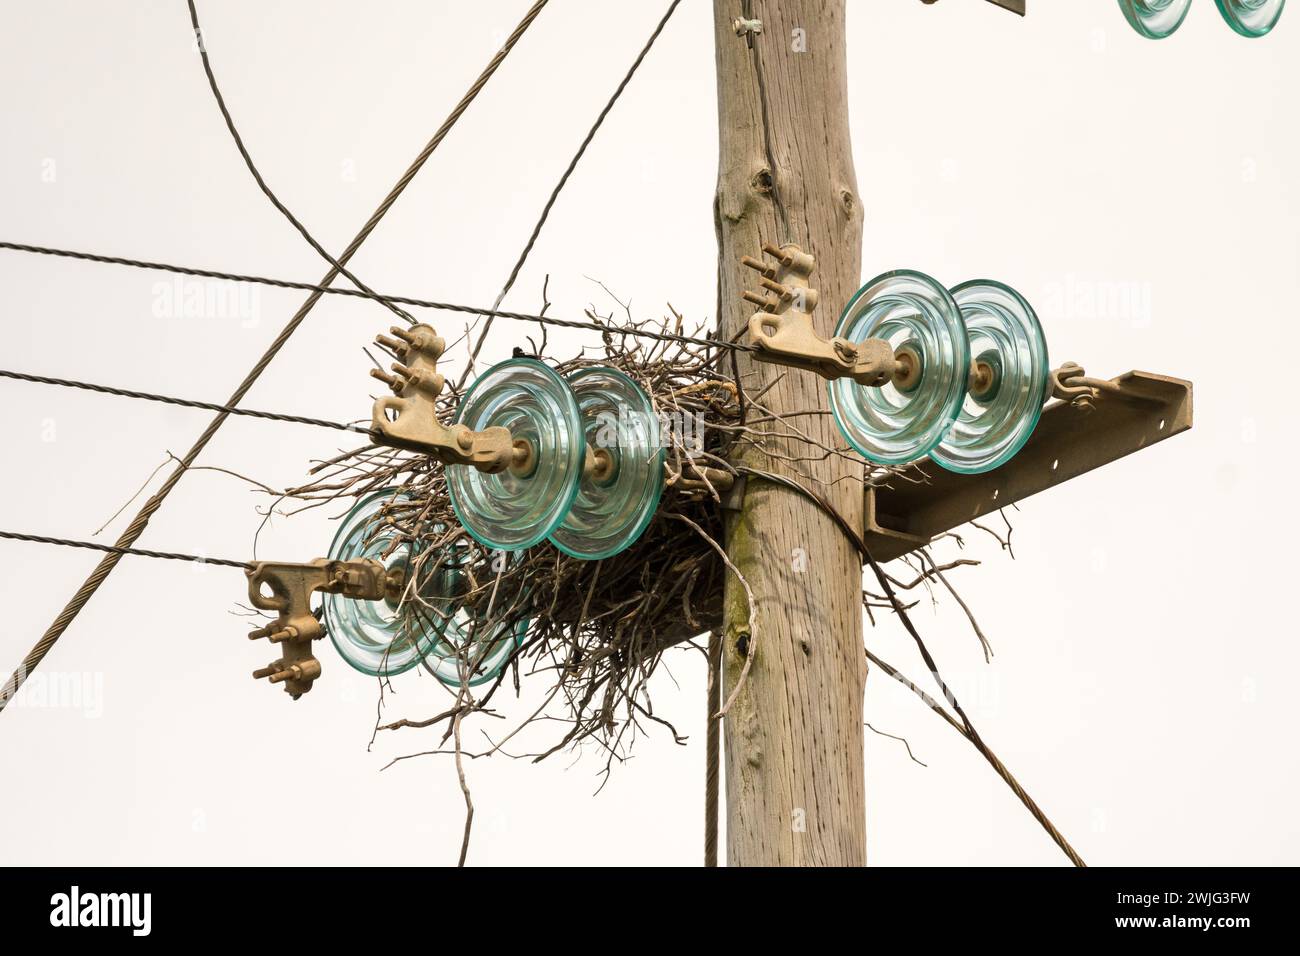 Vögel nisten auf einem Strommast und Drähten zwischen den Blitzableitern oder Isolatoren Stockfoto